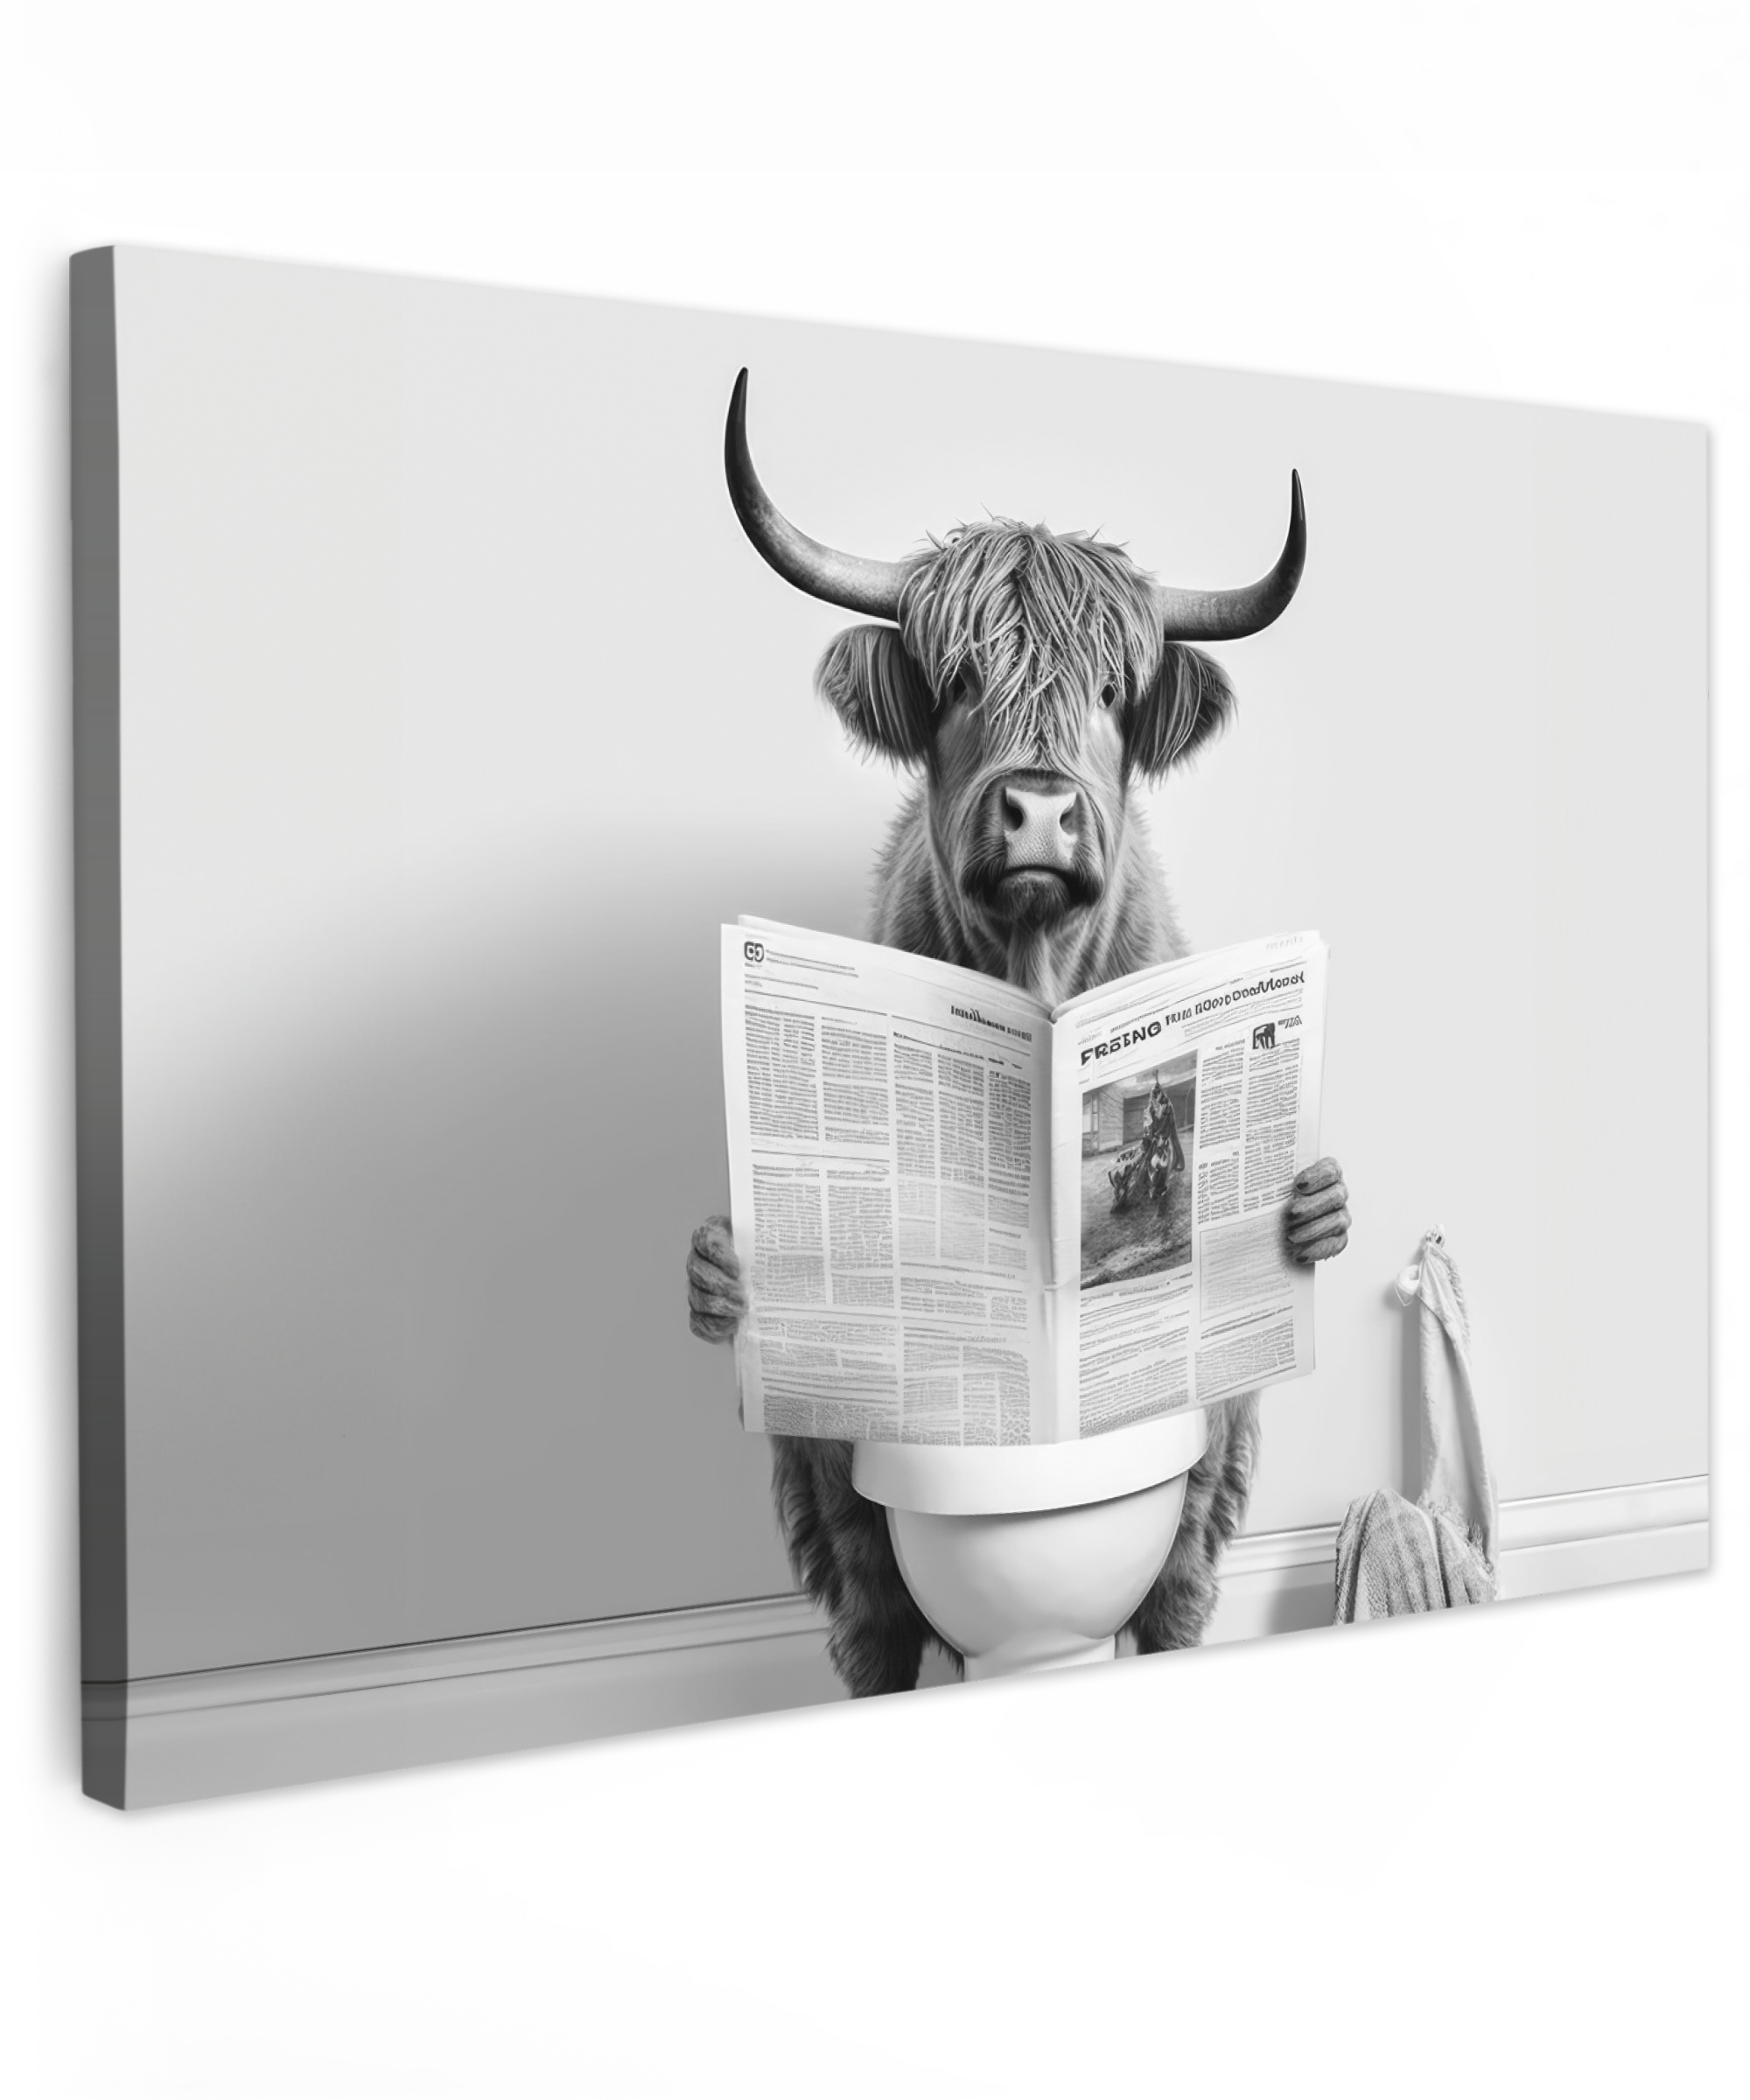 Tableau sur toile - Highlander écossais - Journal - Toilettes - WC - Gris - Blanc - Vache - Cornes